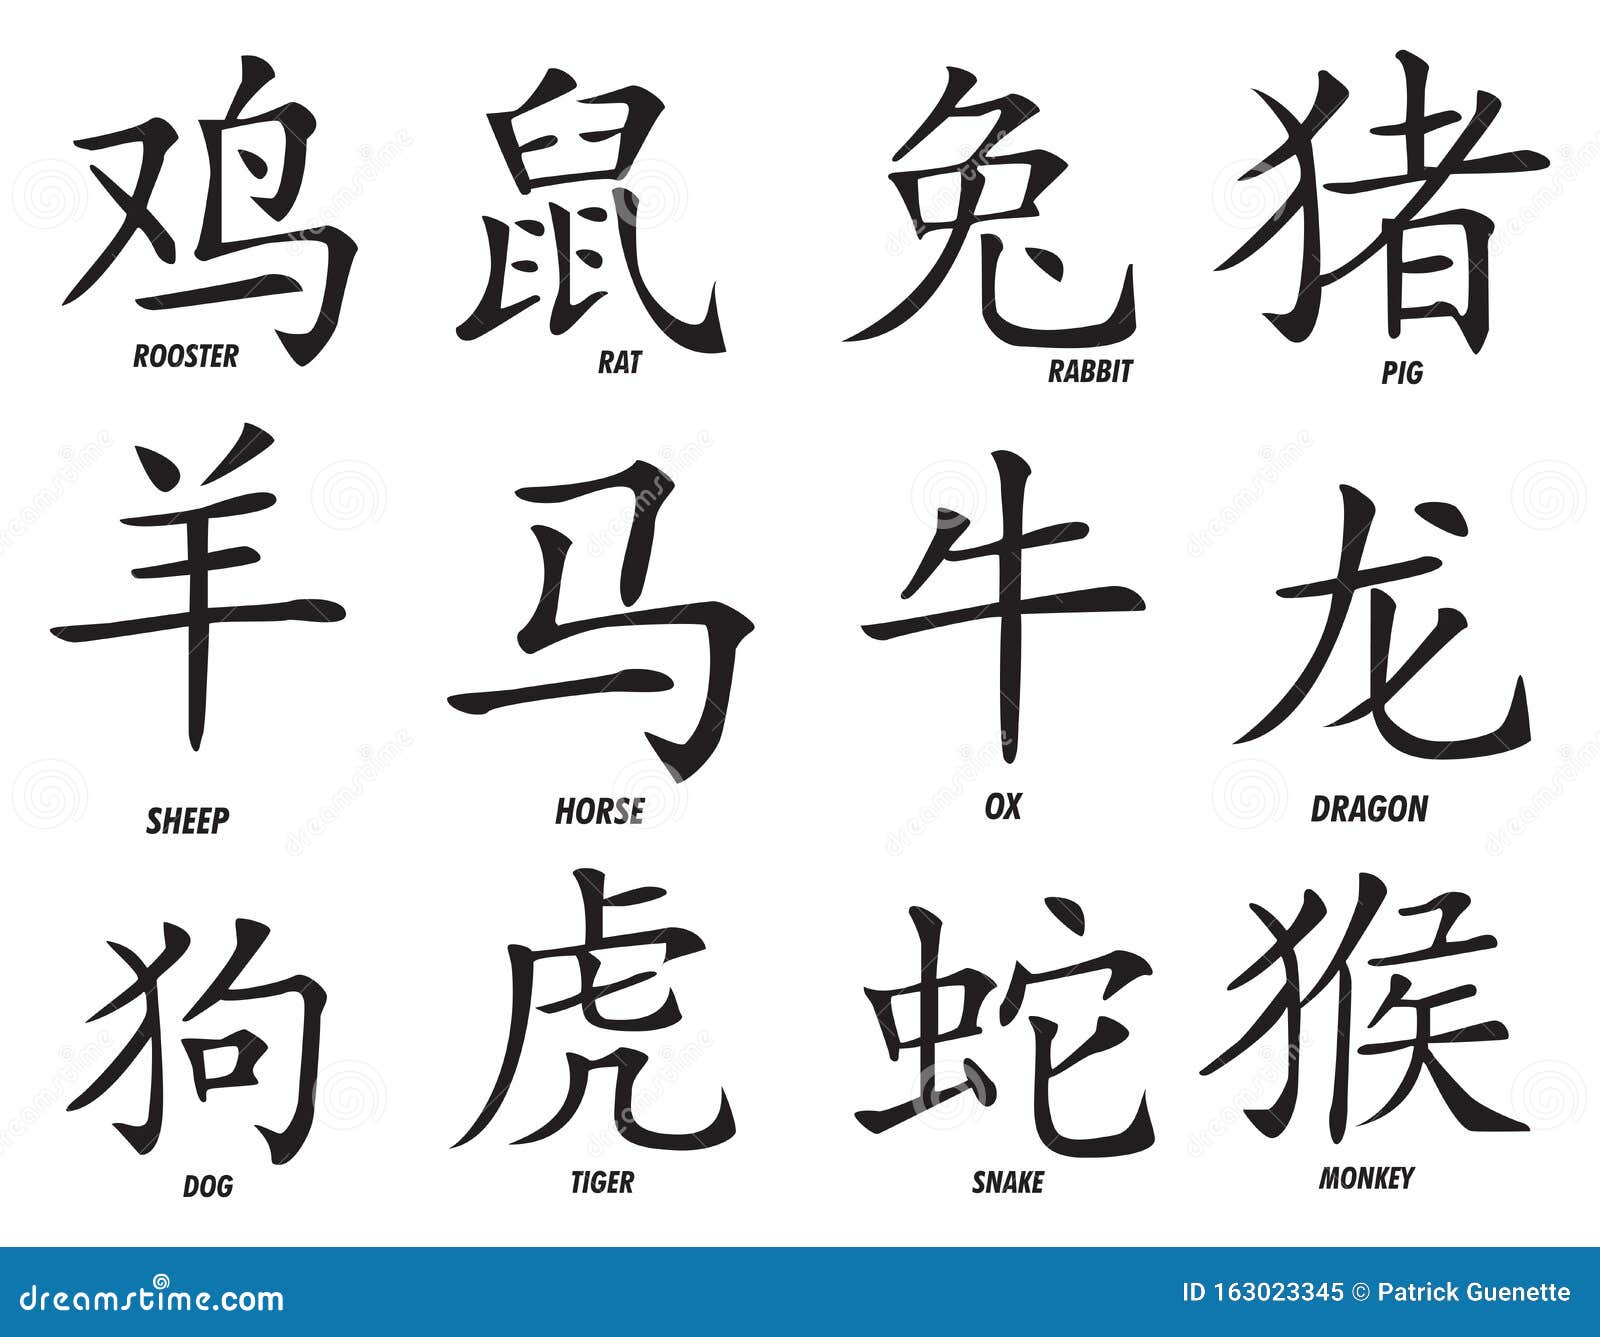 Знаки зодиака на китайском. Китайские знаки зодиака тату. Китайские иероглифы тату. Китайский иероглиф весы тату. Знаки зодиака на китайском иероглифы.